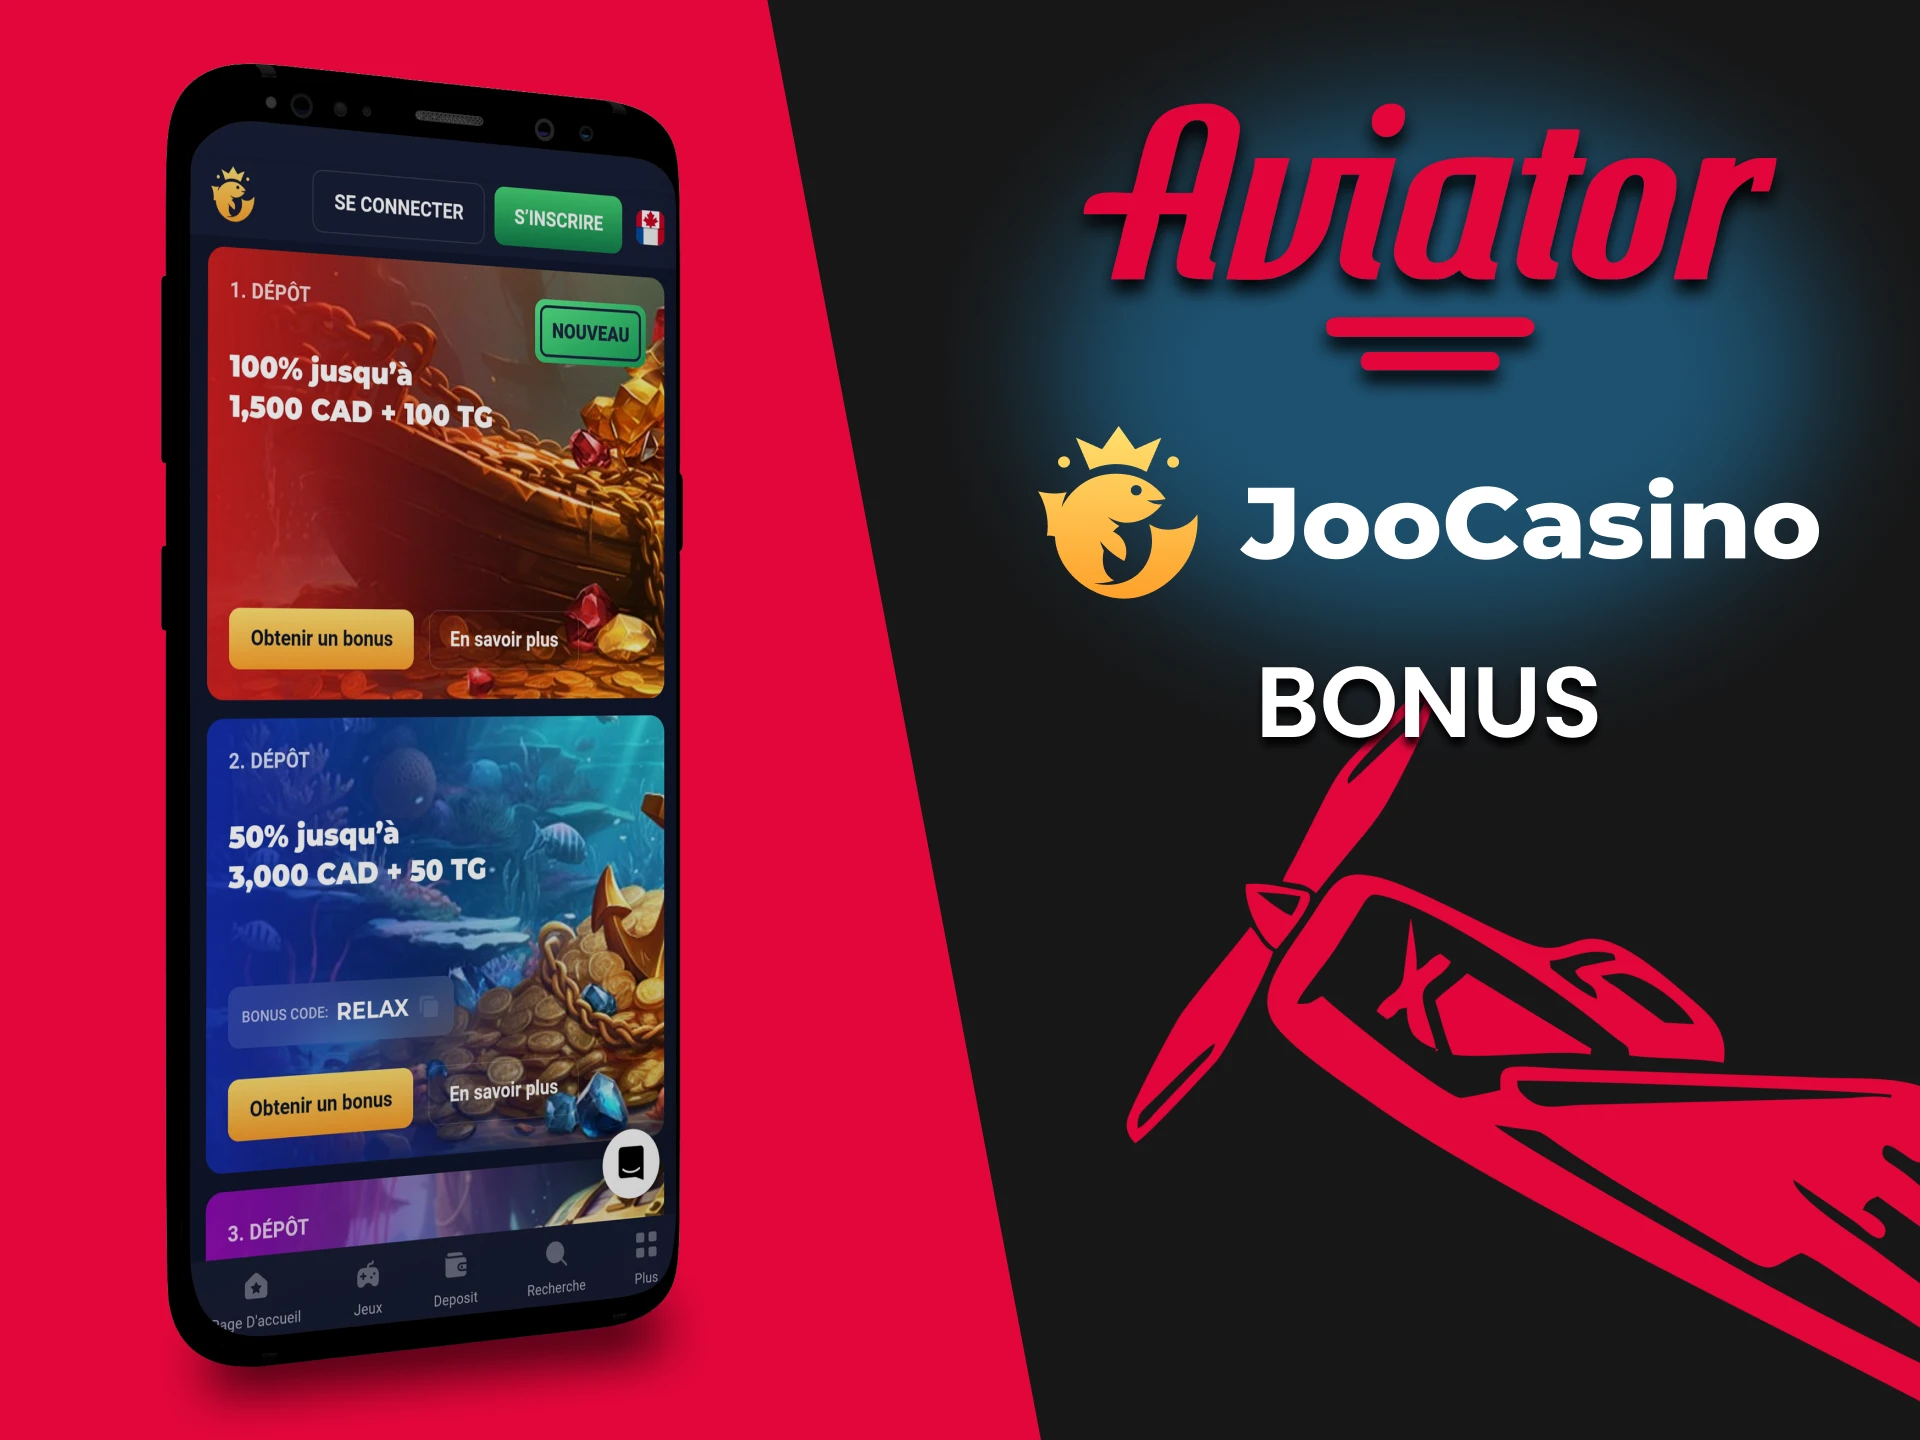 Joo Casino offre un bonus pour le jeu Aviator.